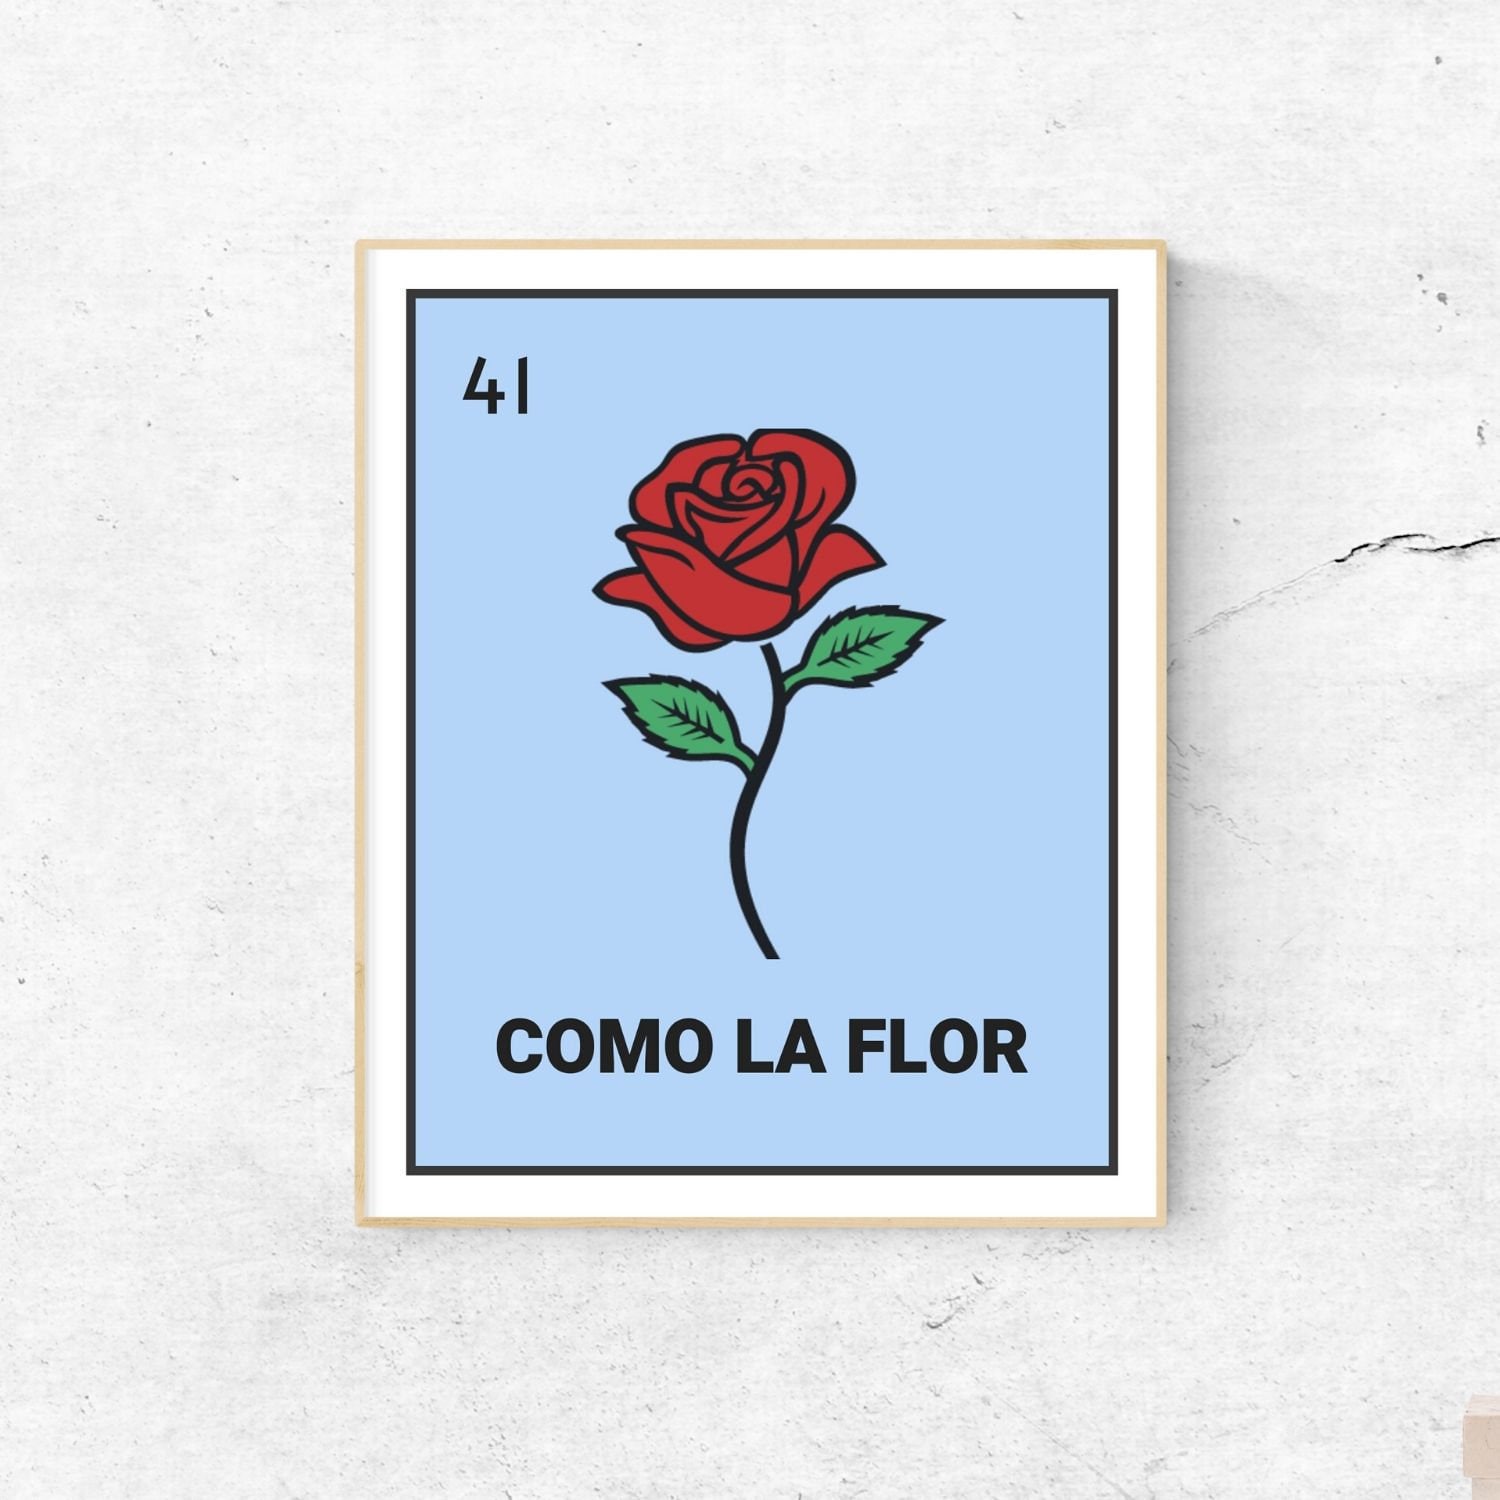 La flor in spanish